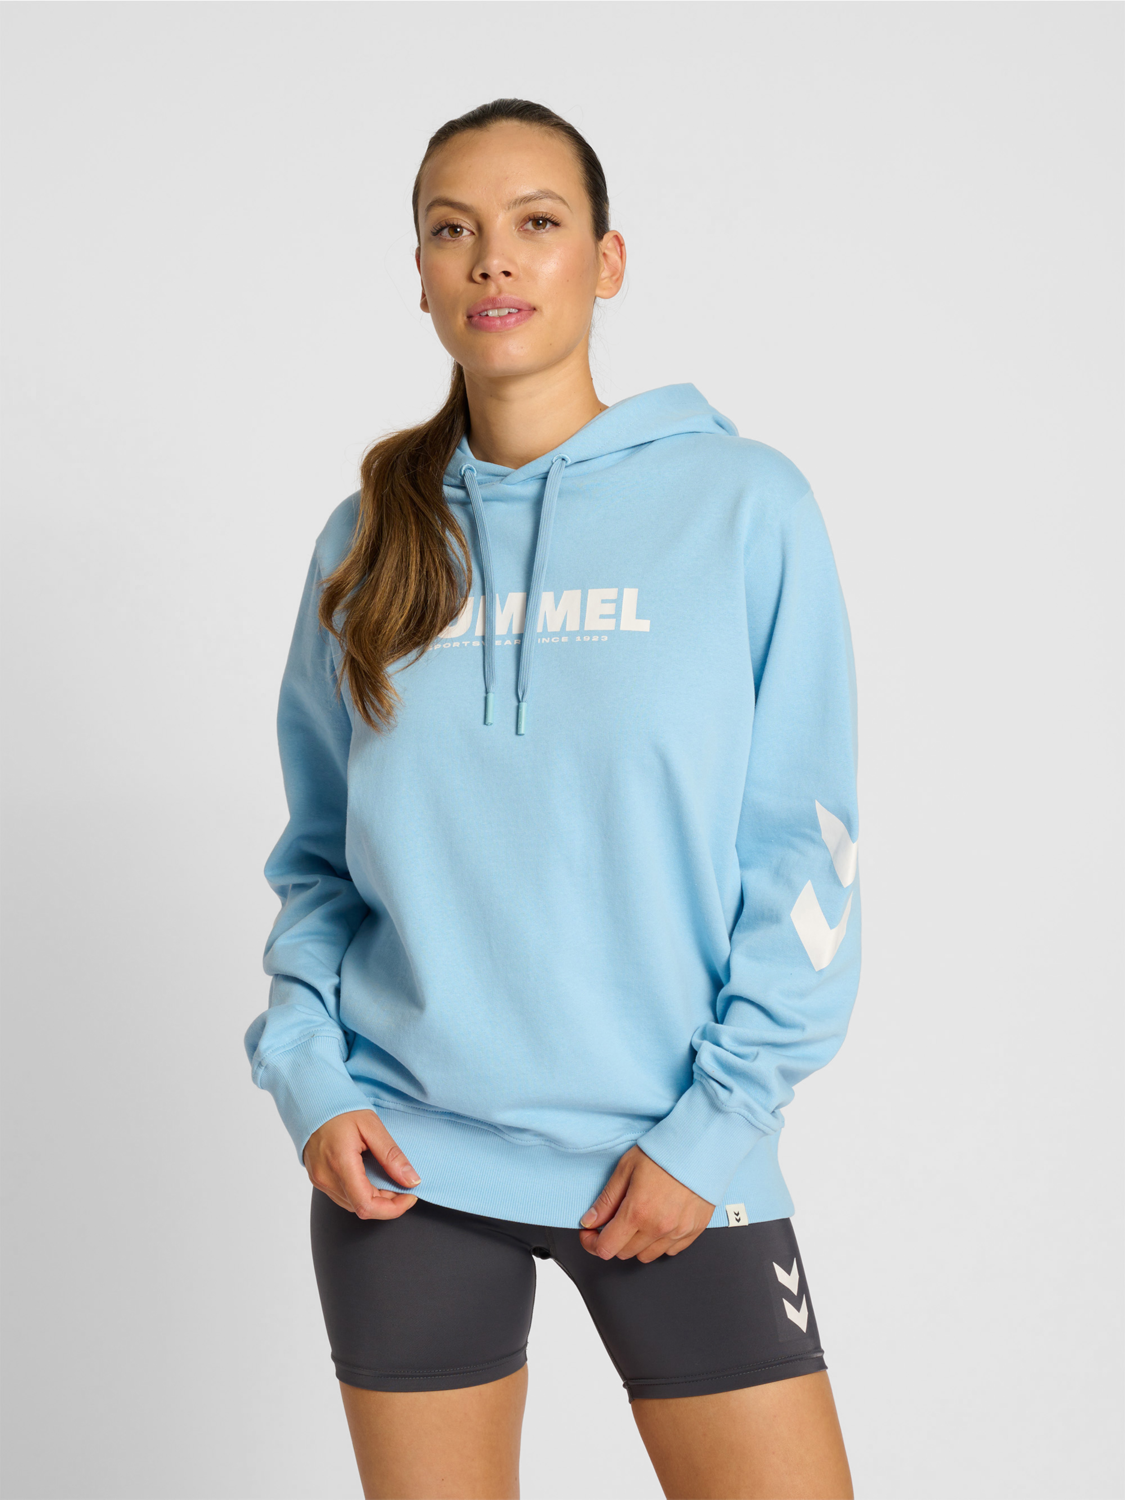 Details about   Hummel Women Ladies Sport Training Casual Hoodie Hooded Sweatshirt Tracksuit Top 